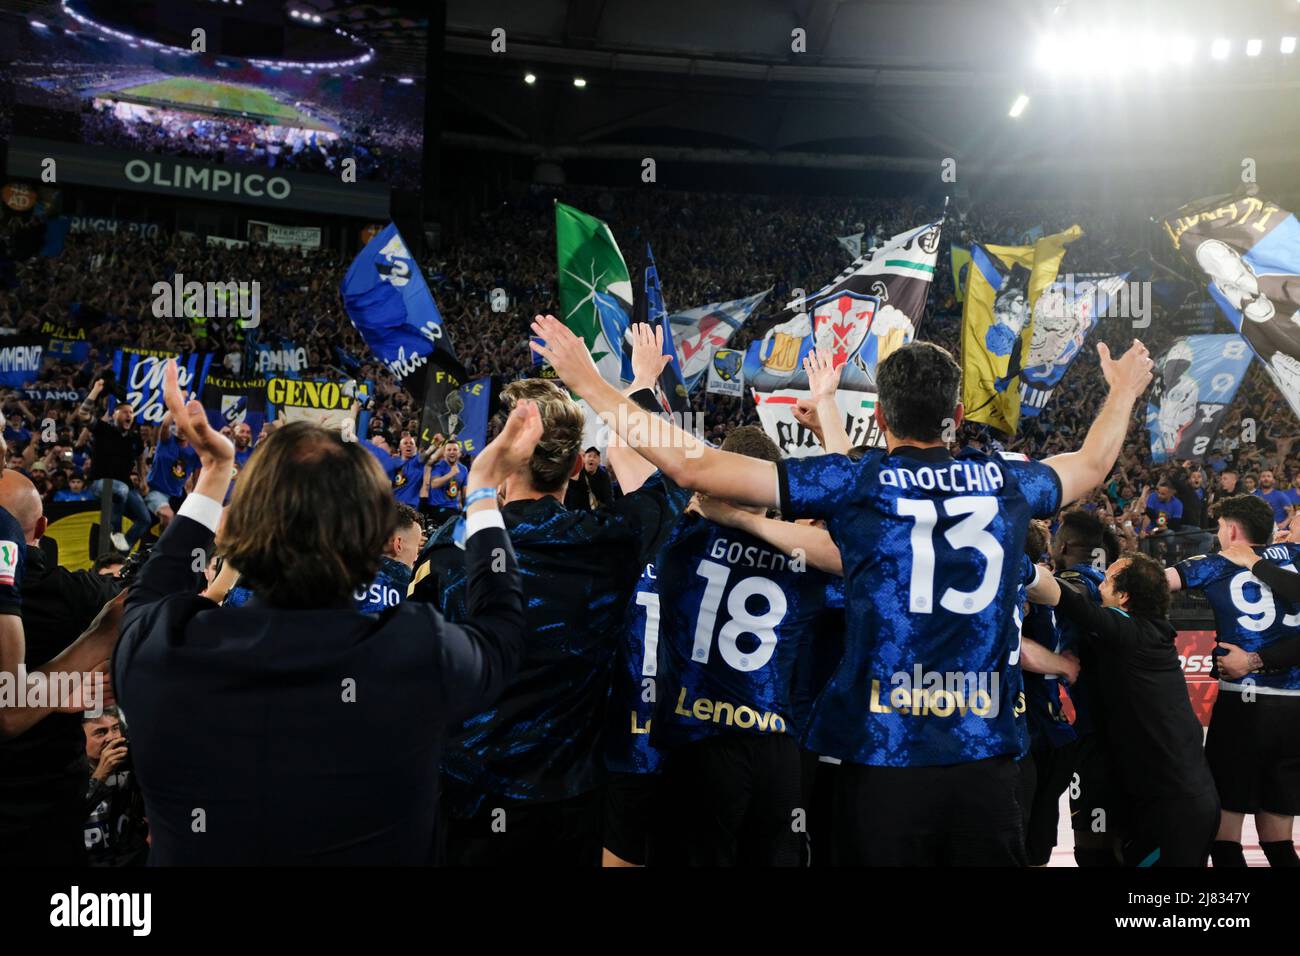 Inter feiert am 11. Mai 2022 im Olimpico-Stadion in Rom, im Zentrum Italiens, das Siegesspiel beim Coppa Italia-Finale zwischen Juventus und Inter. Stockfoto